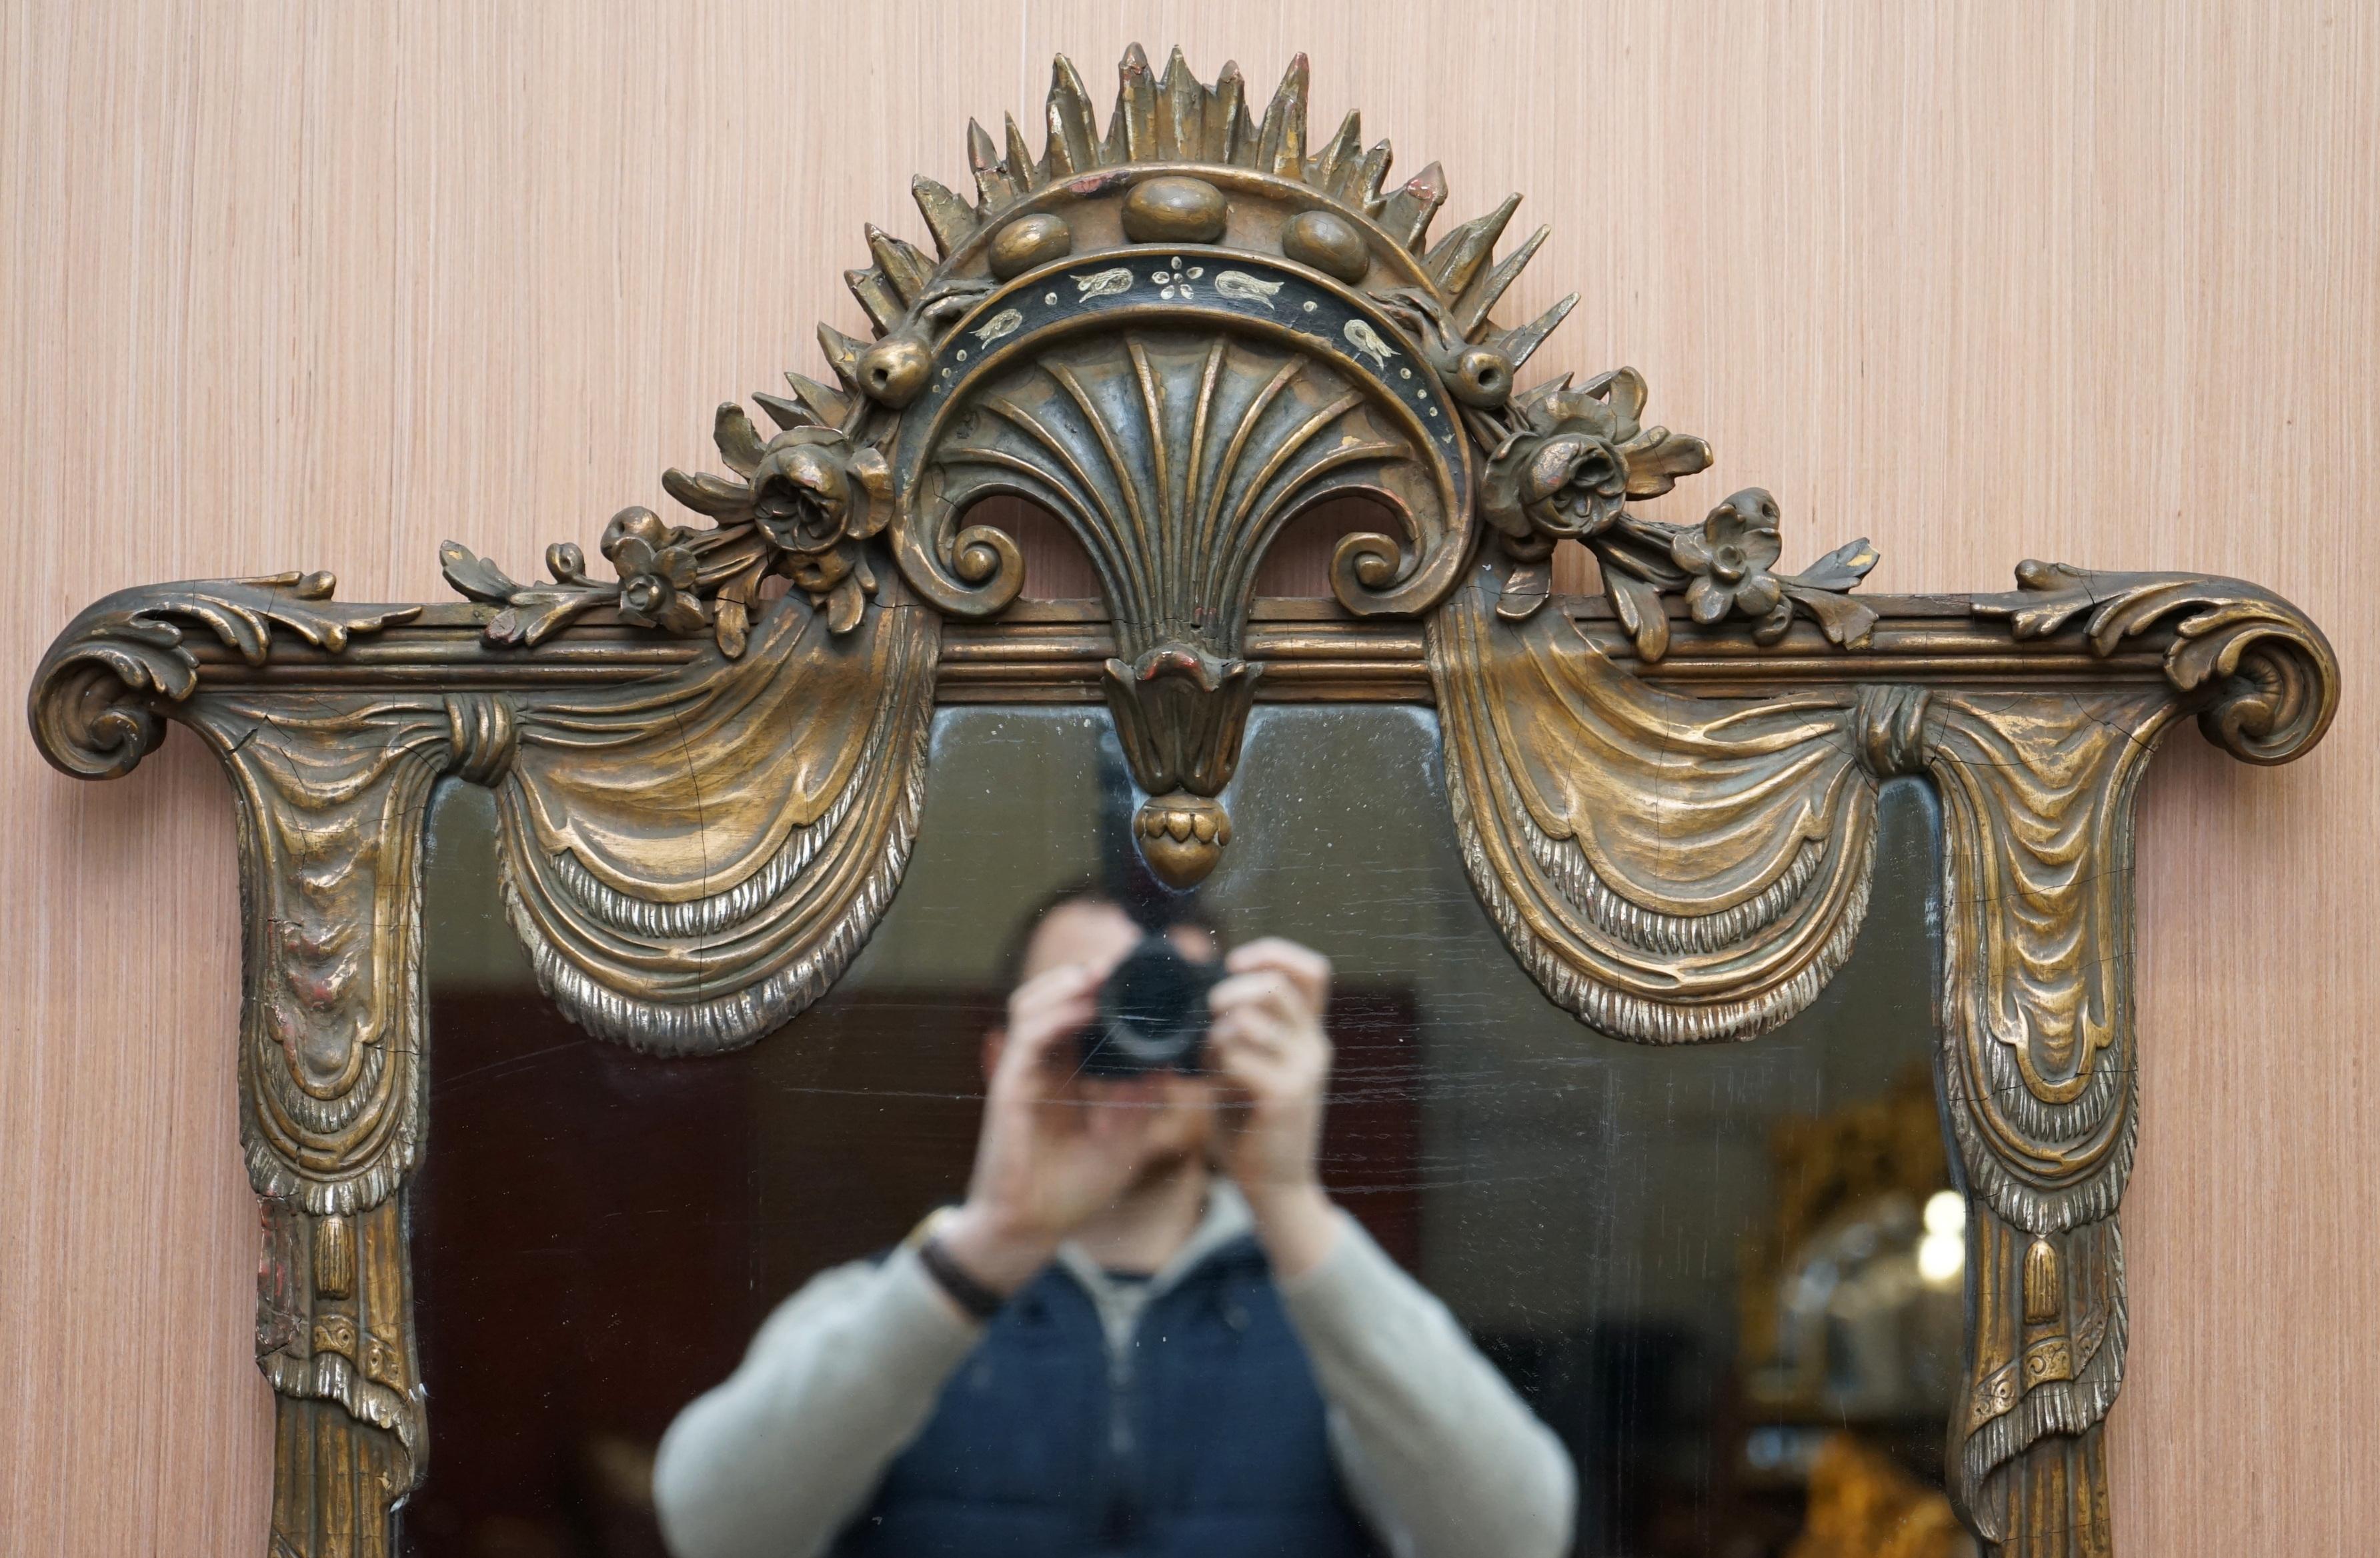 Nous sommes ravis d'offrir à la vente ce beau miroir mural surdimensionné de la fin du 19ème siècle avec des feuilles d'acanthe et des détails floraux sculptés à la main

Un miroir original du 19ème siècle de très haute qualité, une forme rare et